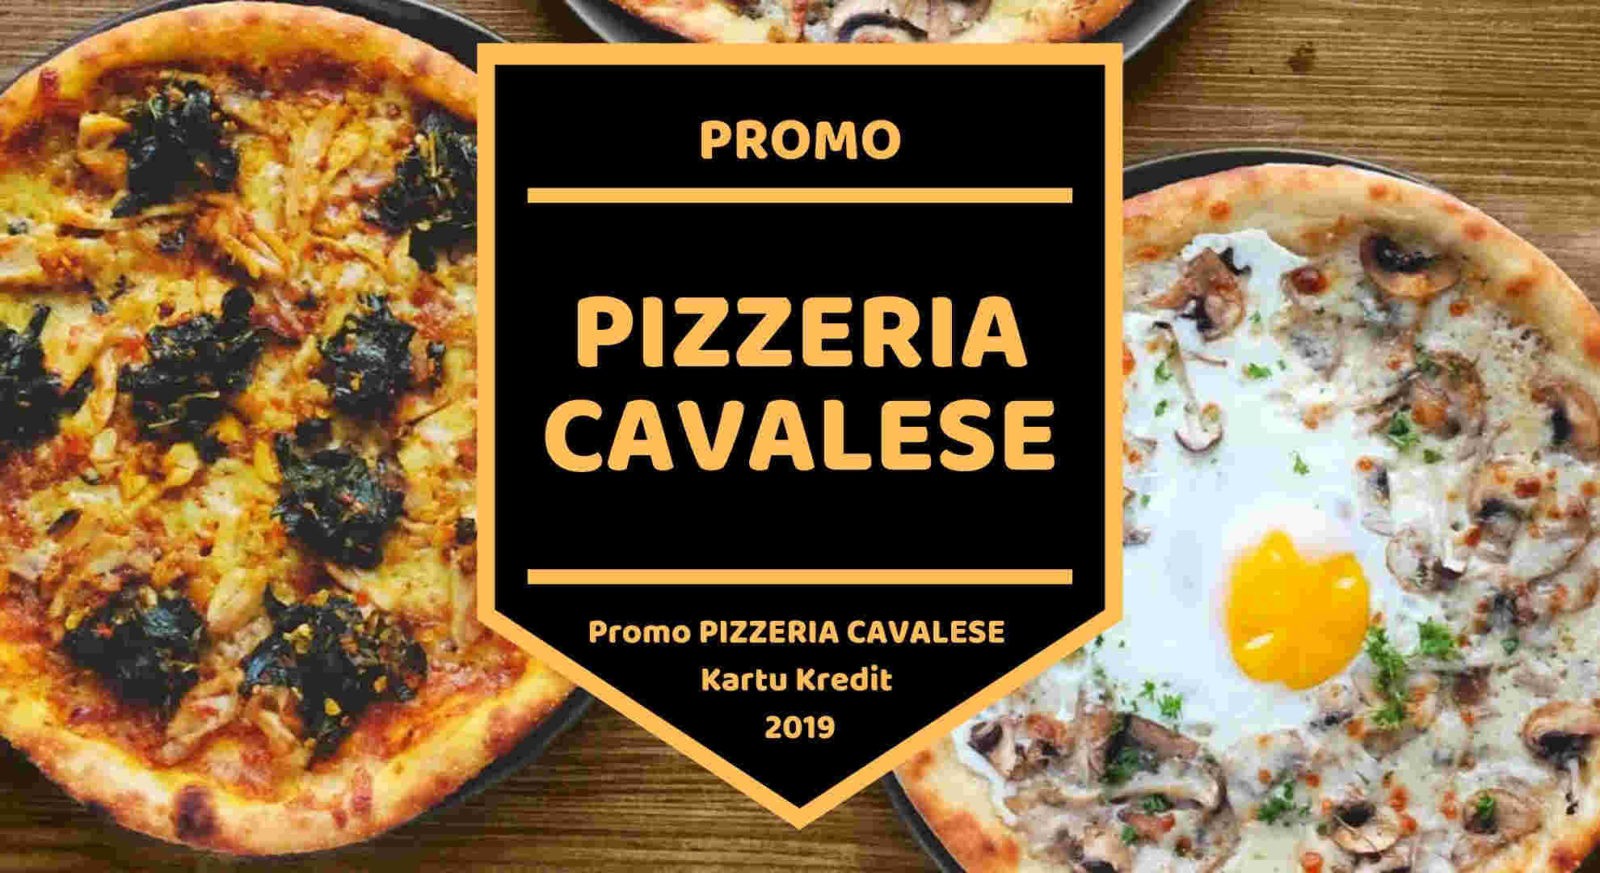 Promo Pizzeria Cavalese